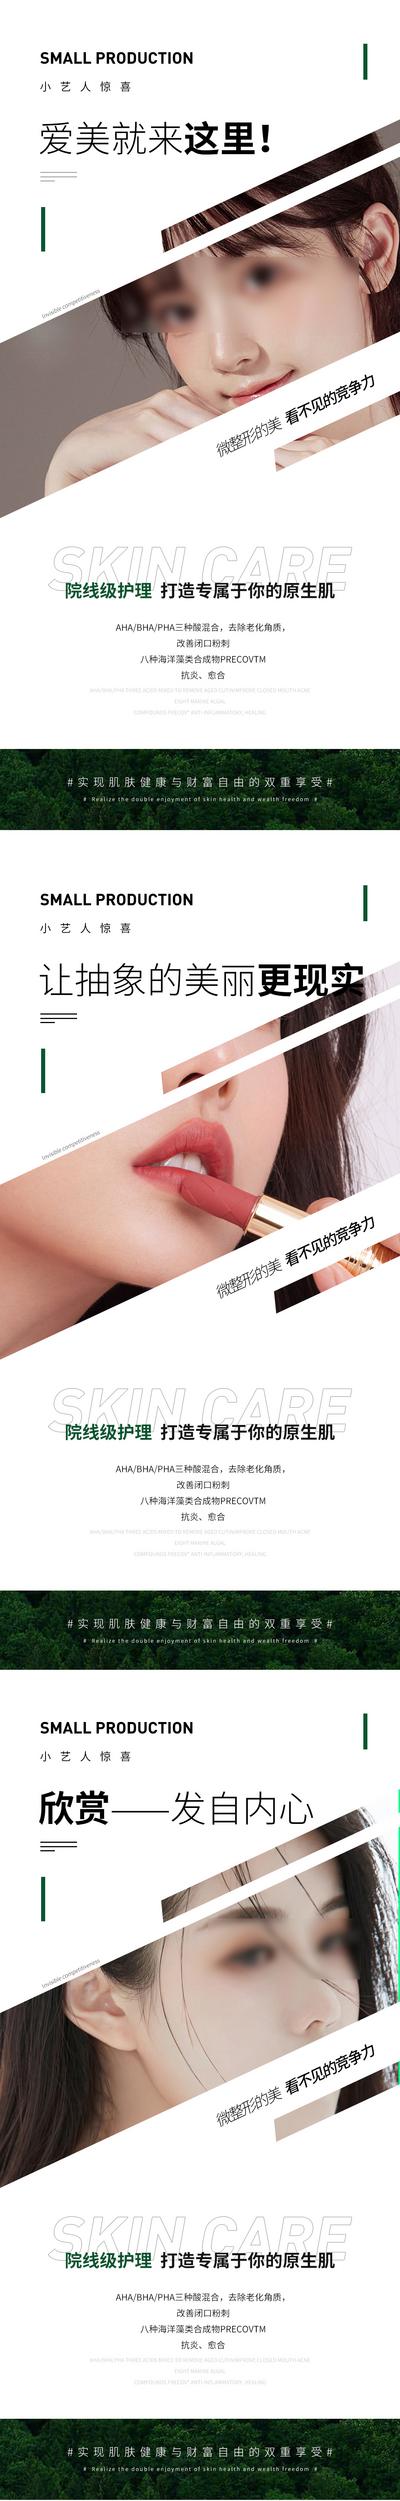 南门网 广告 海报 医美 人物 促销 整形 护理